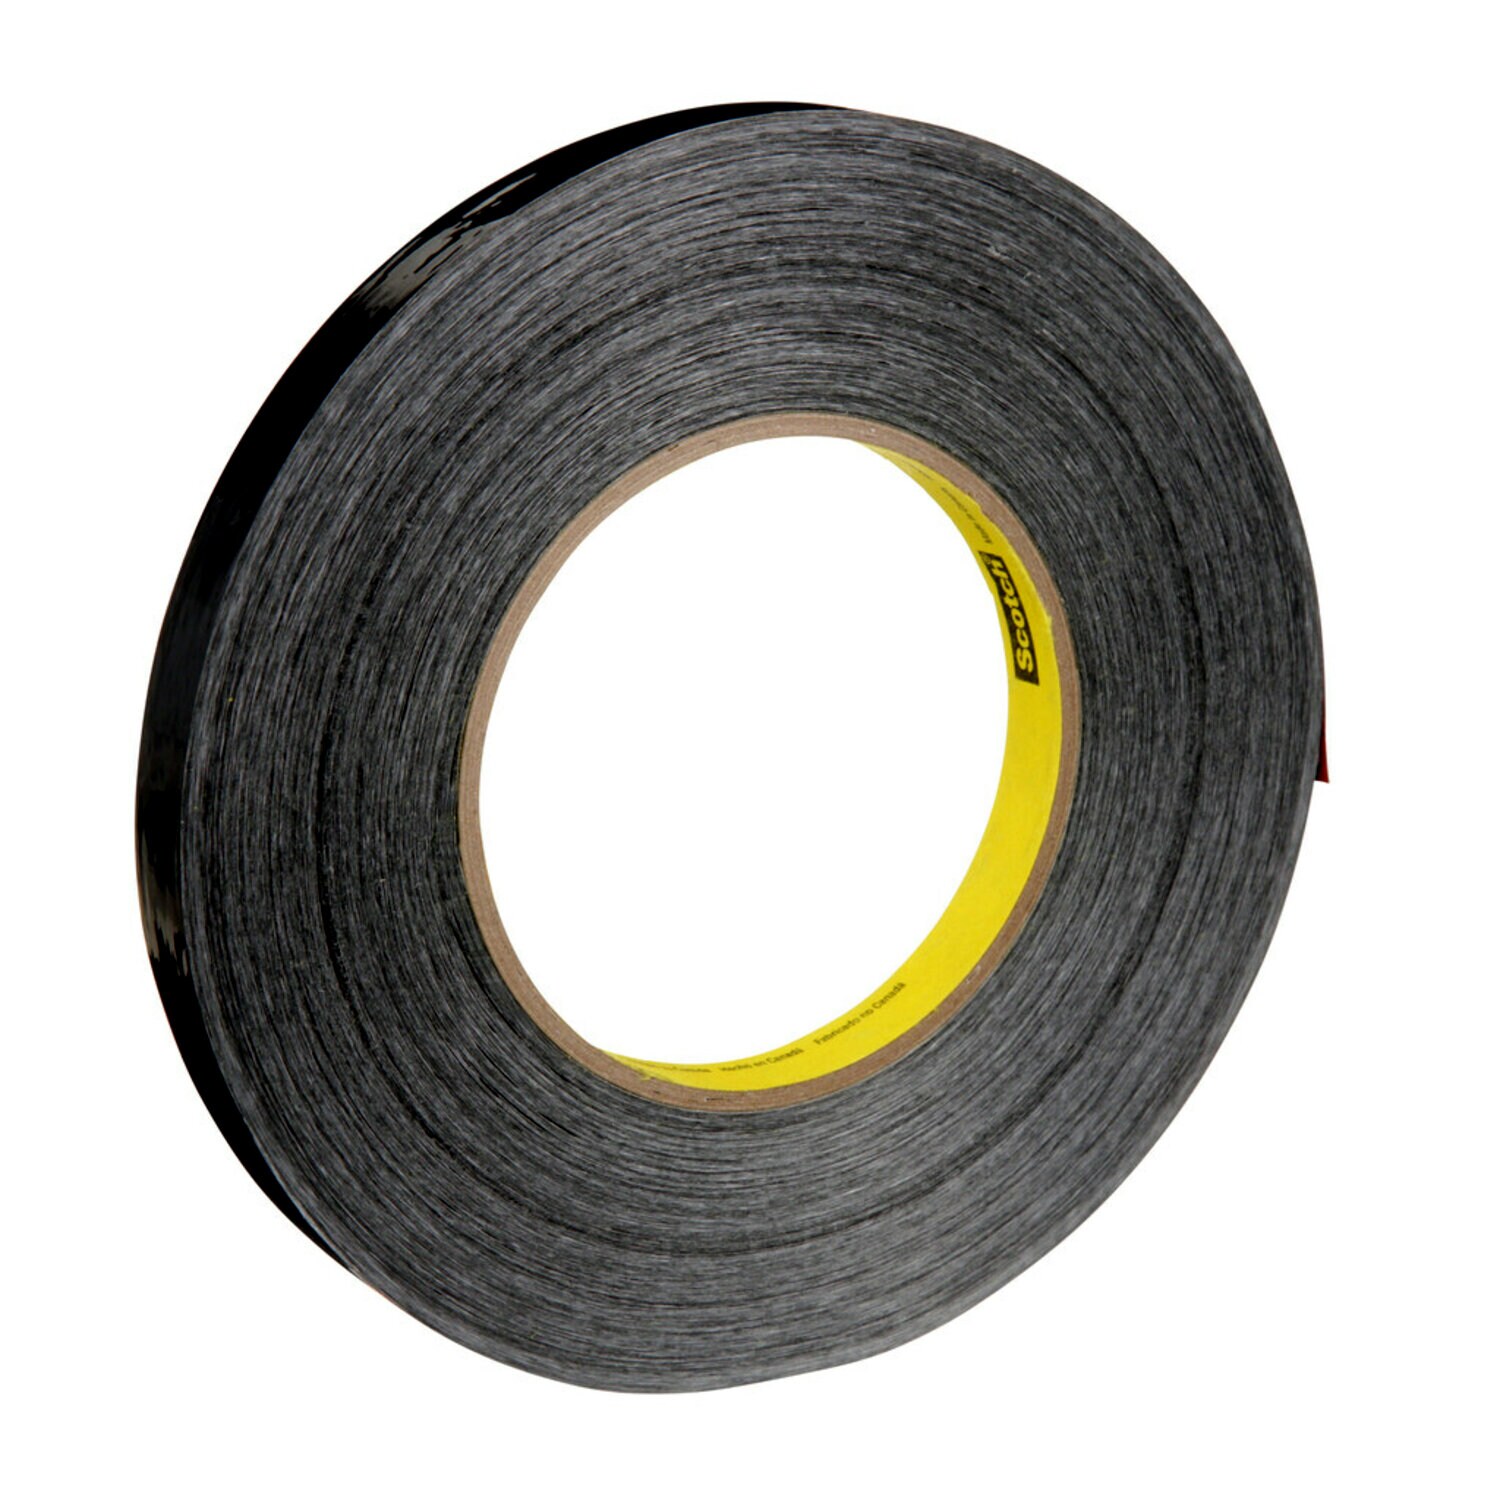 7000124631 - Scotch Filament Tape 890MSR, Black, 18 mm x 55 m, 8 mil, 48 rolls per
case